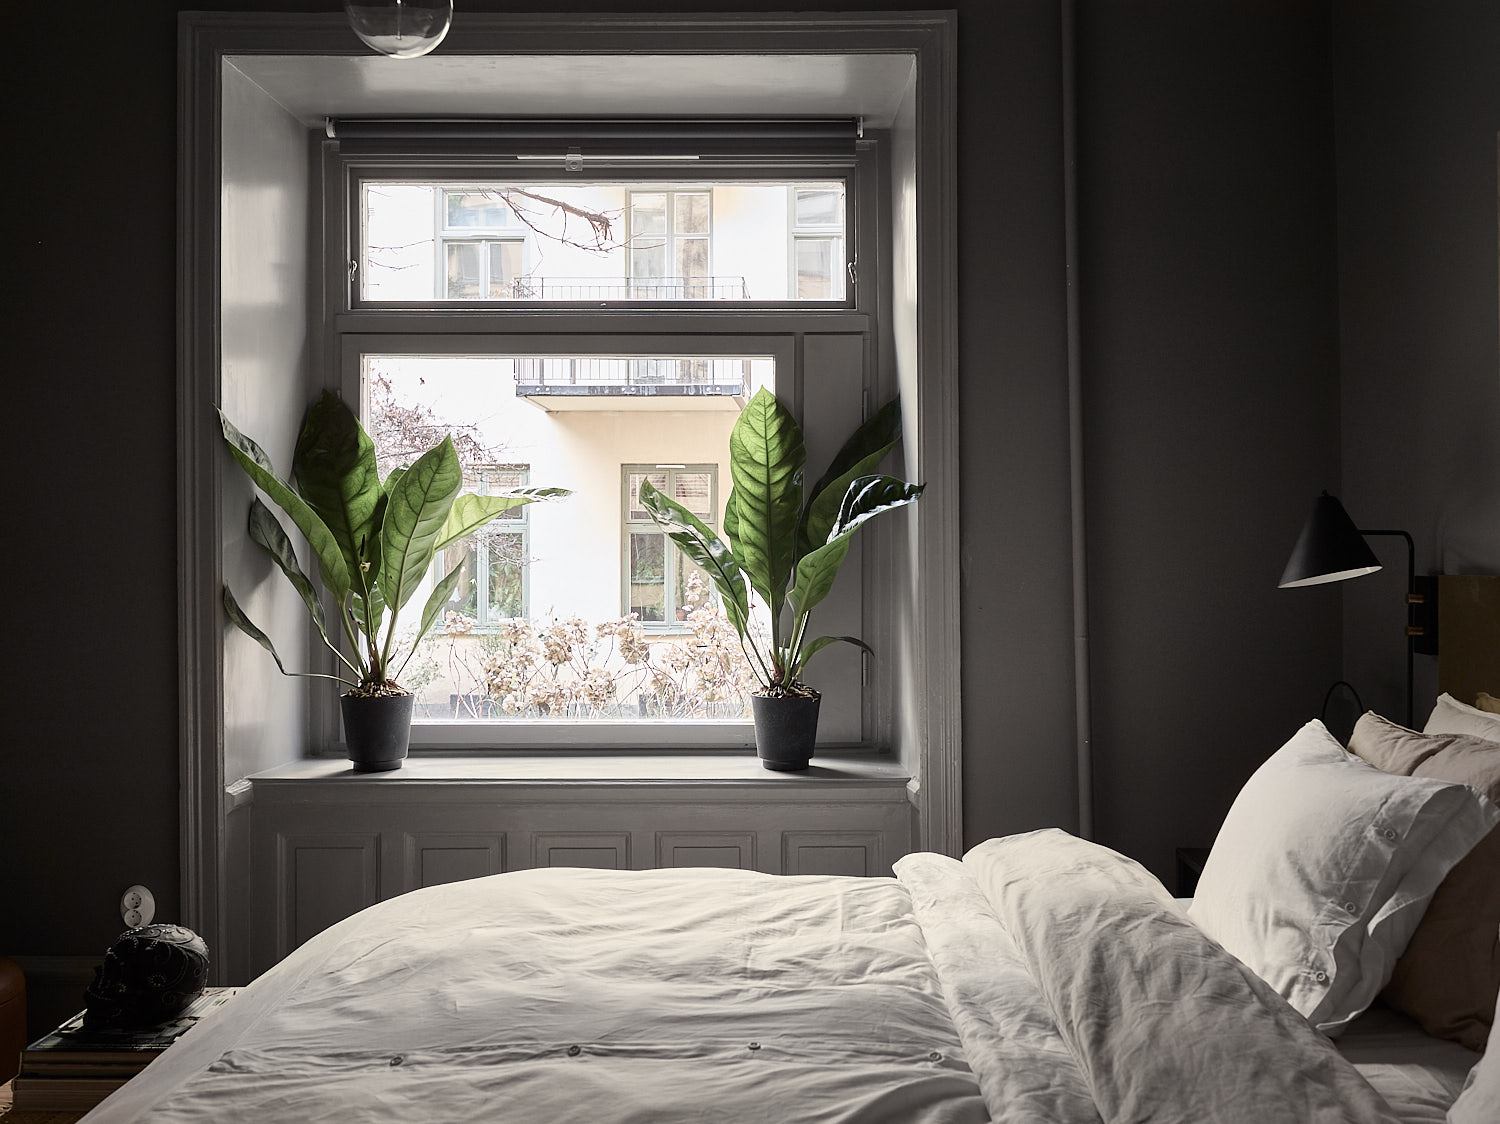 живые комнатные цветы в темной спальне светлое постельное белье фото стиль дизайн интерьер